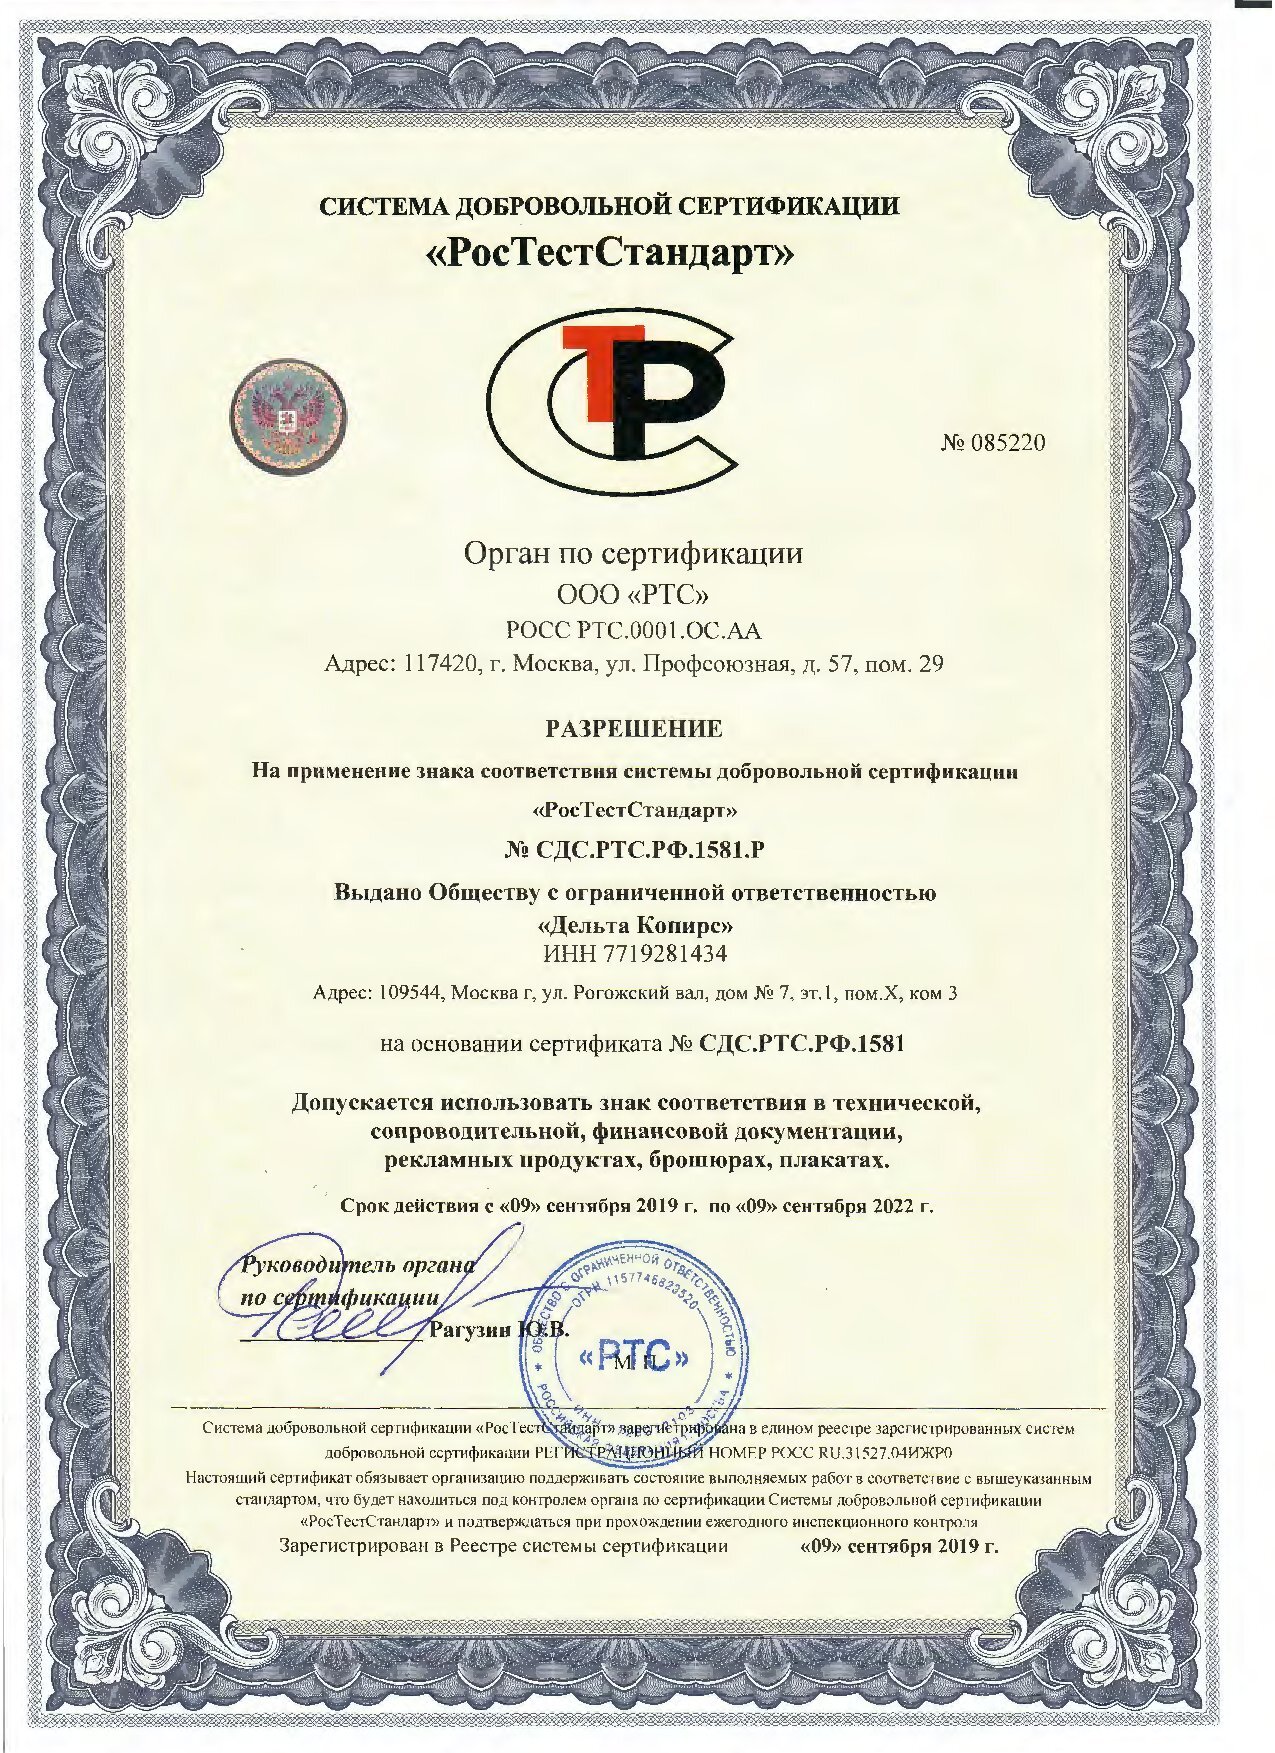 сертификаты дельта копирс (2)